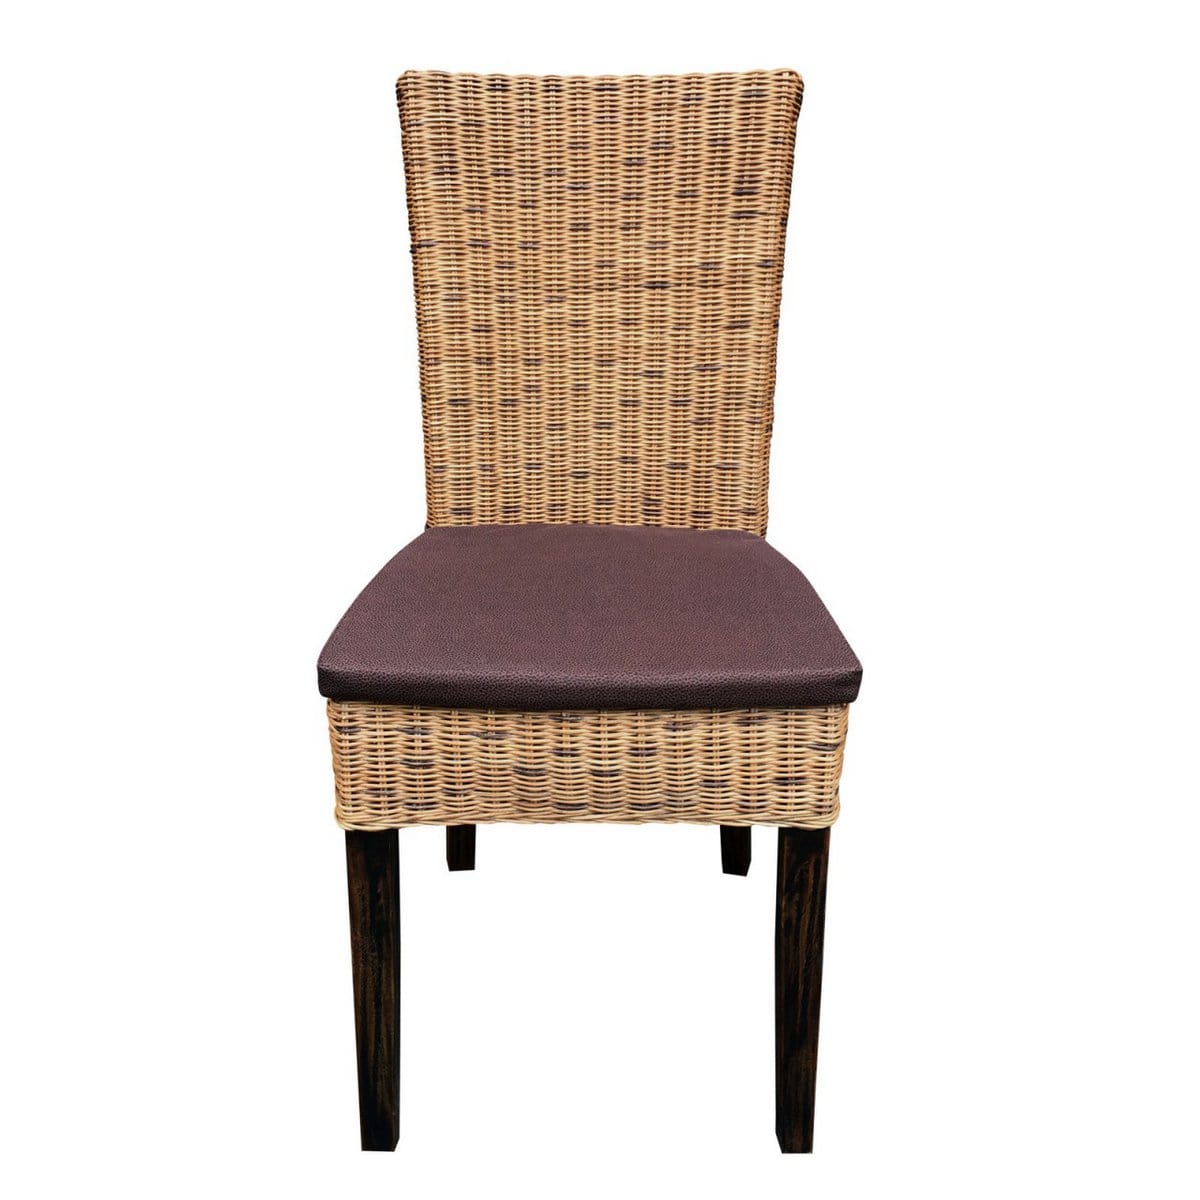 Voglrieder kreatives Wohnen Eetkamerstoelen set van 6 rotan stoelen wintertuin rieten stoelen Cardine cabana zitkussen bruin